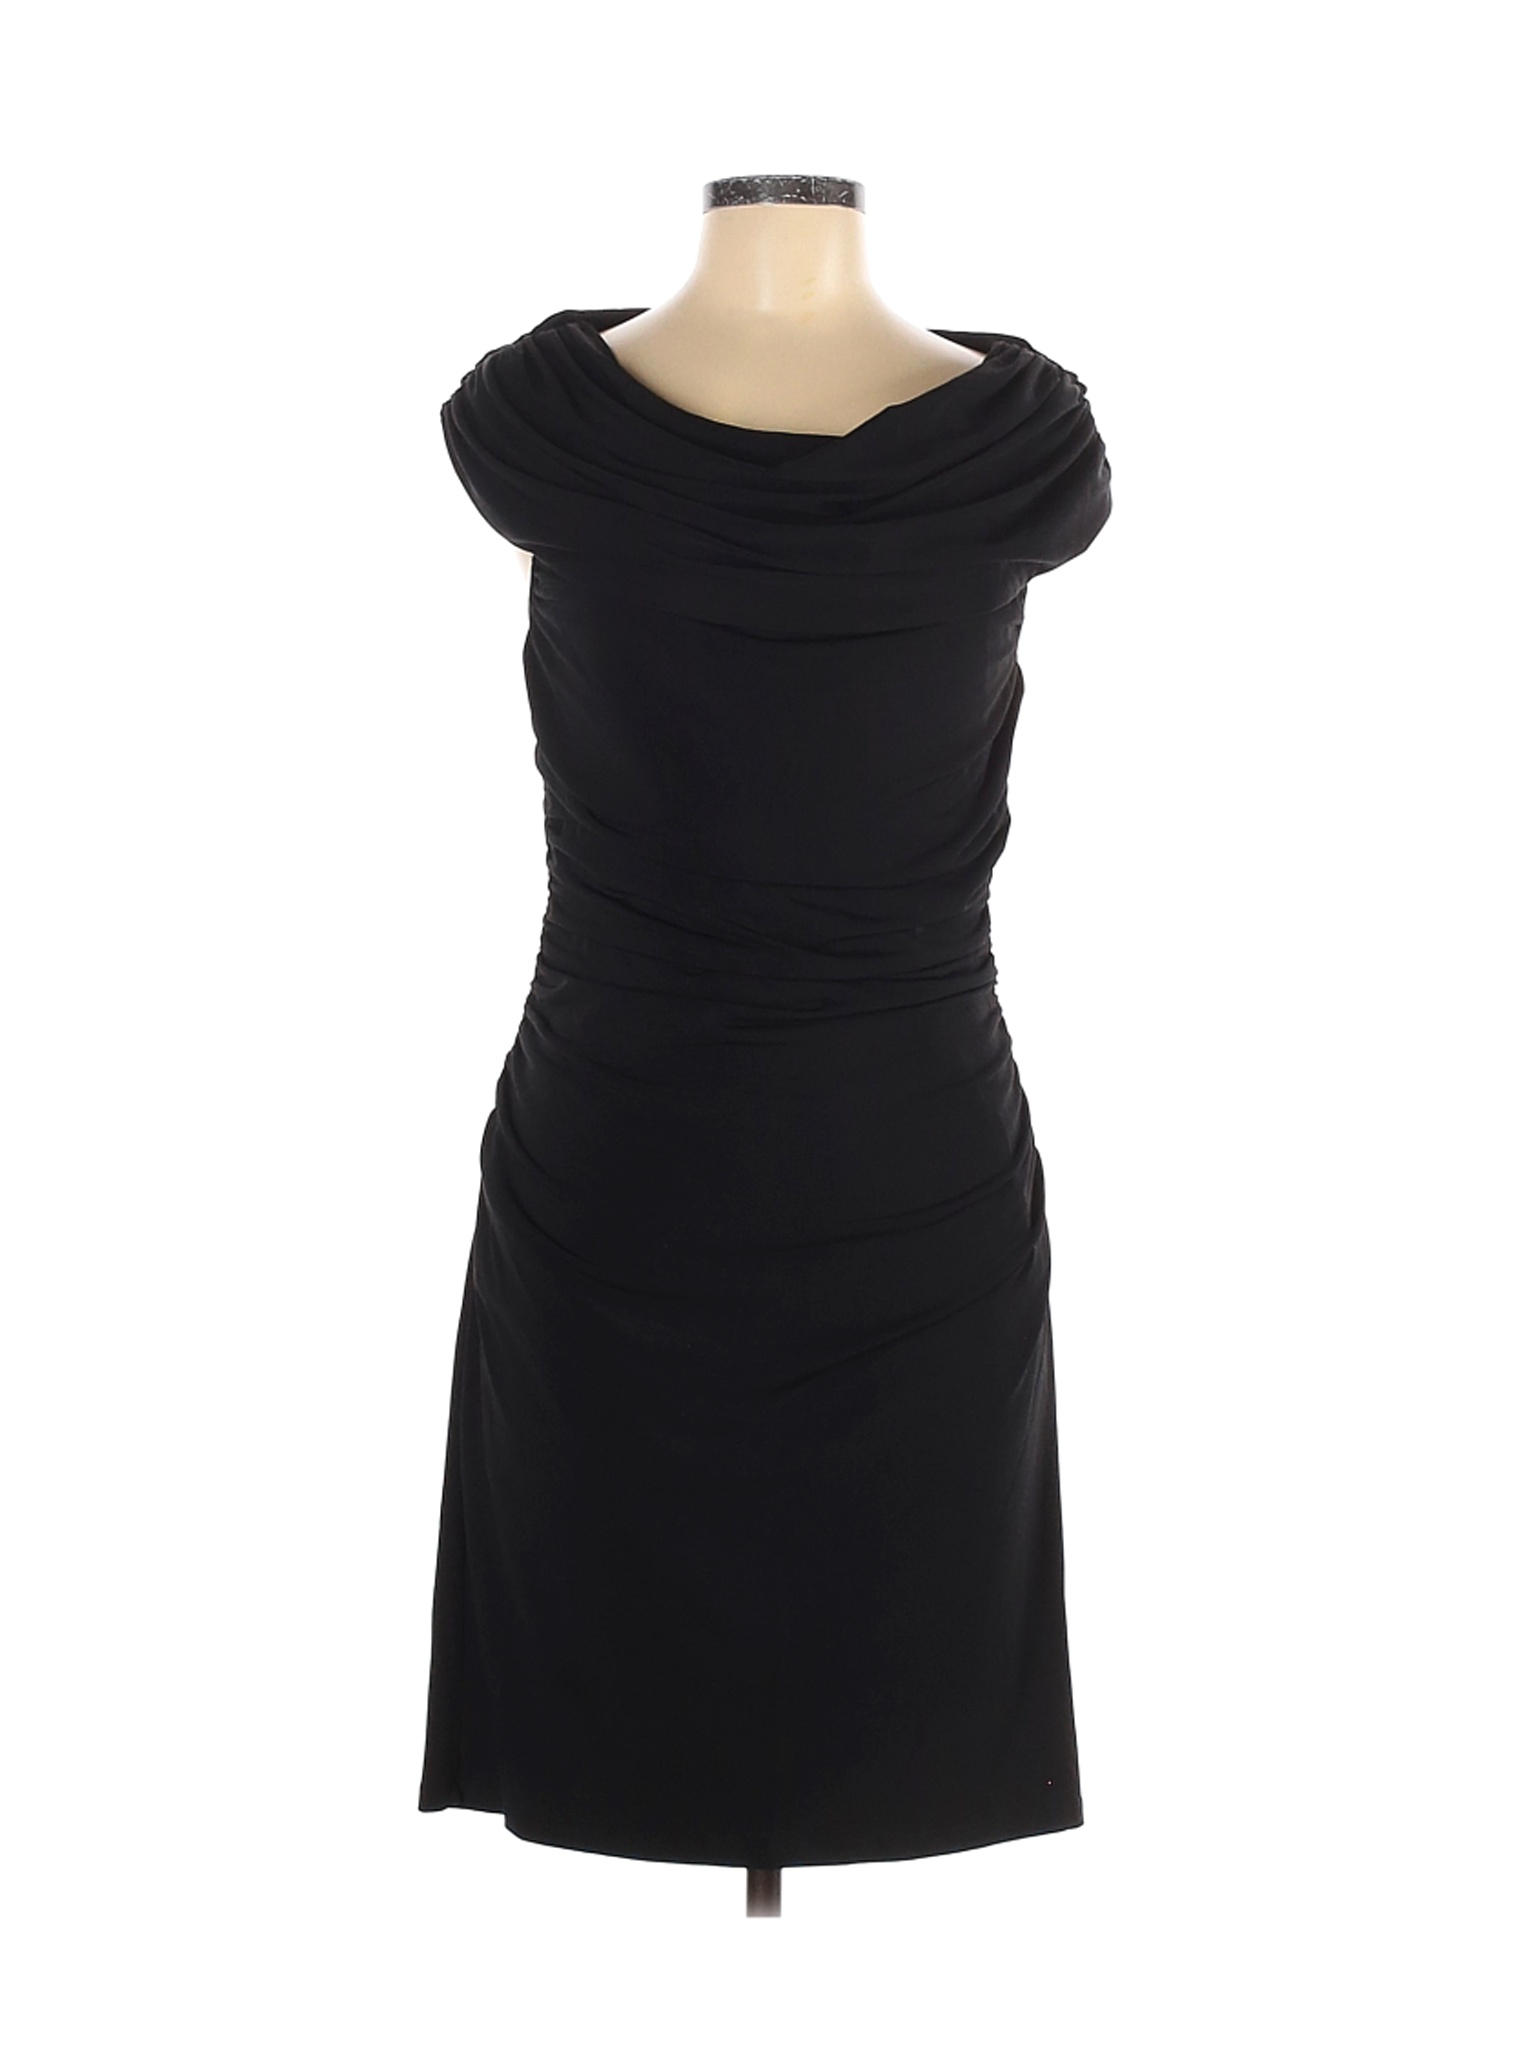 Spense Women Black Cocktail Dress 8 | eBay